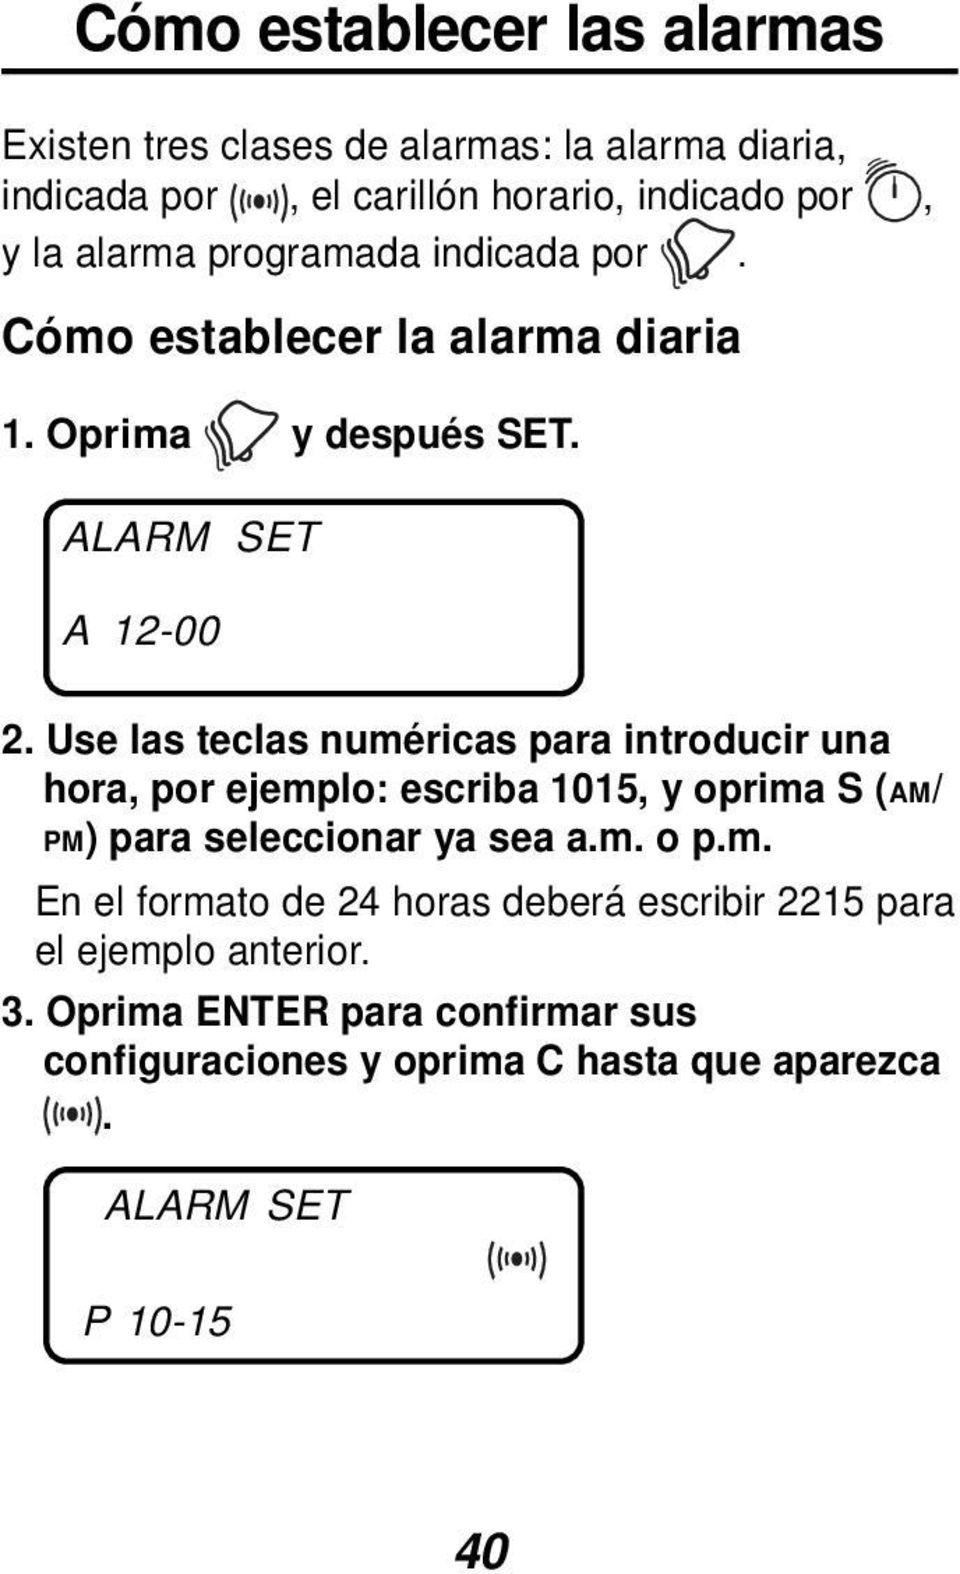 Use las teclas numéricas para introducir una hora, por ejemplo: escriba 1015, y oprima S (AM/ PM) para seleccionar ya sea a.m. o p.m. En el formato de 24 horas deberá escribir 2215 para el ejemplo anterior.